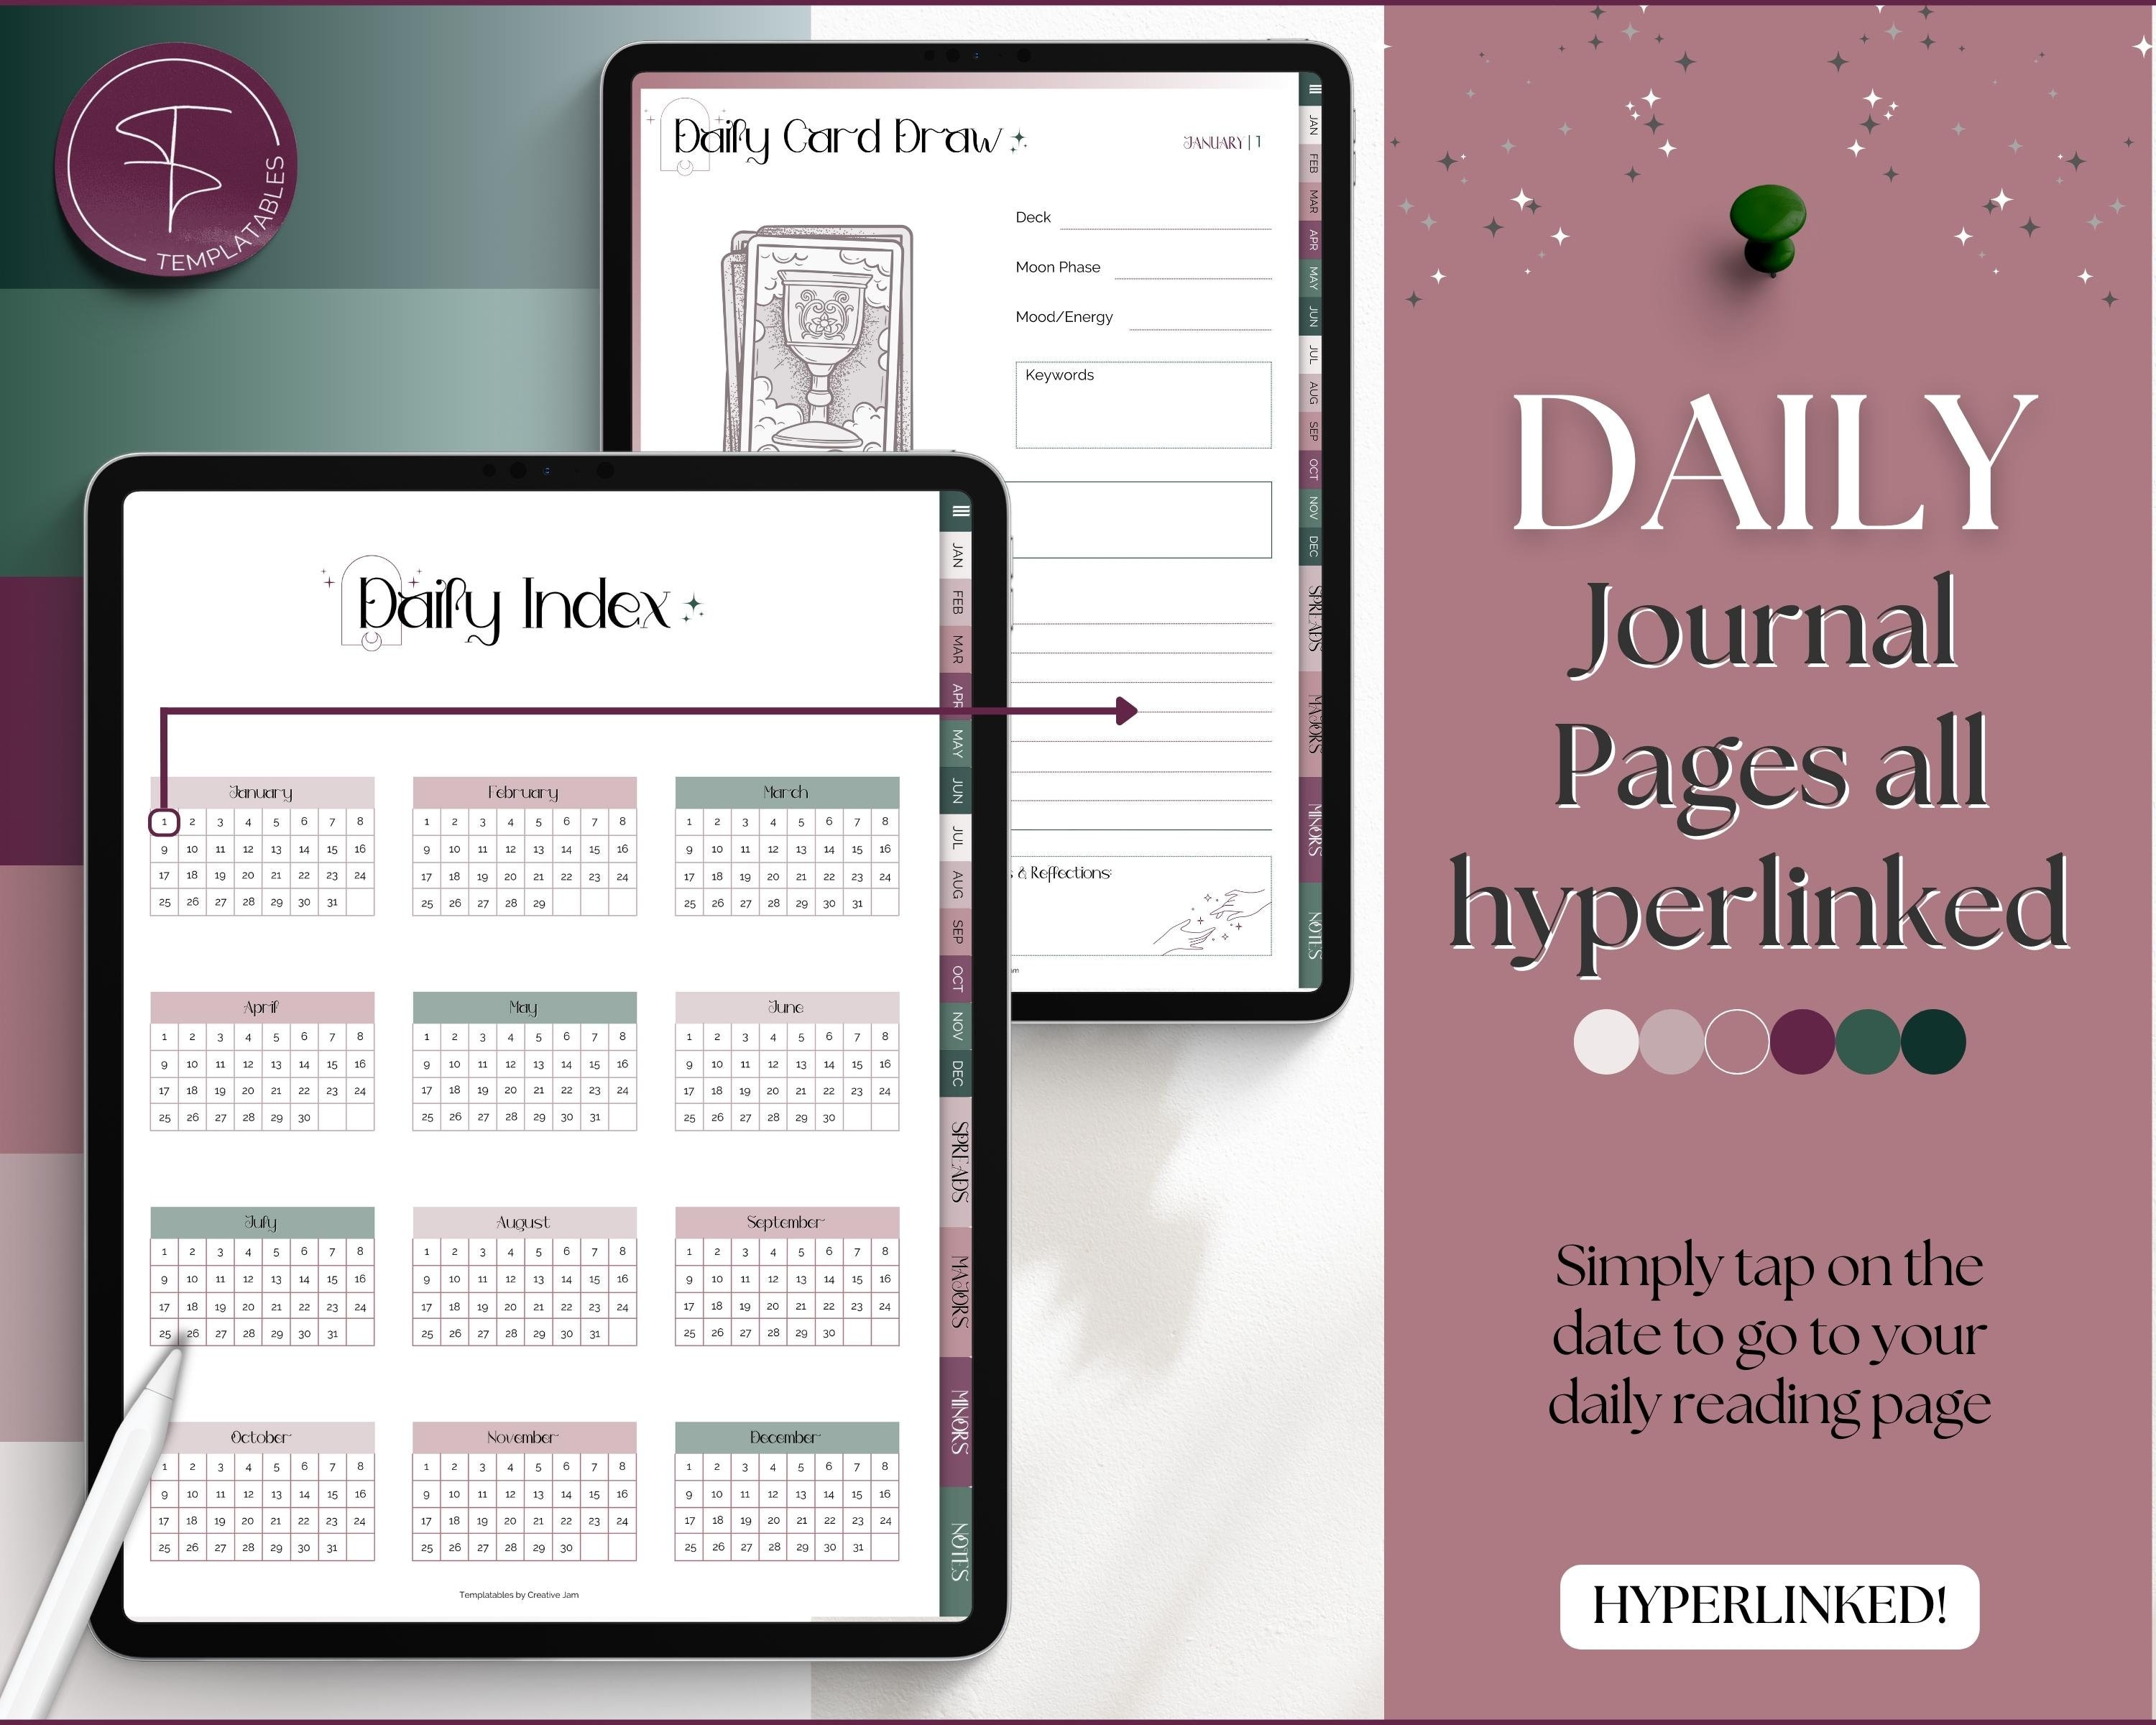 Tarot Journal Digital, Tarot Planner Workbook, Daily Card Reading